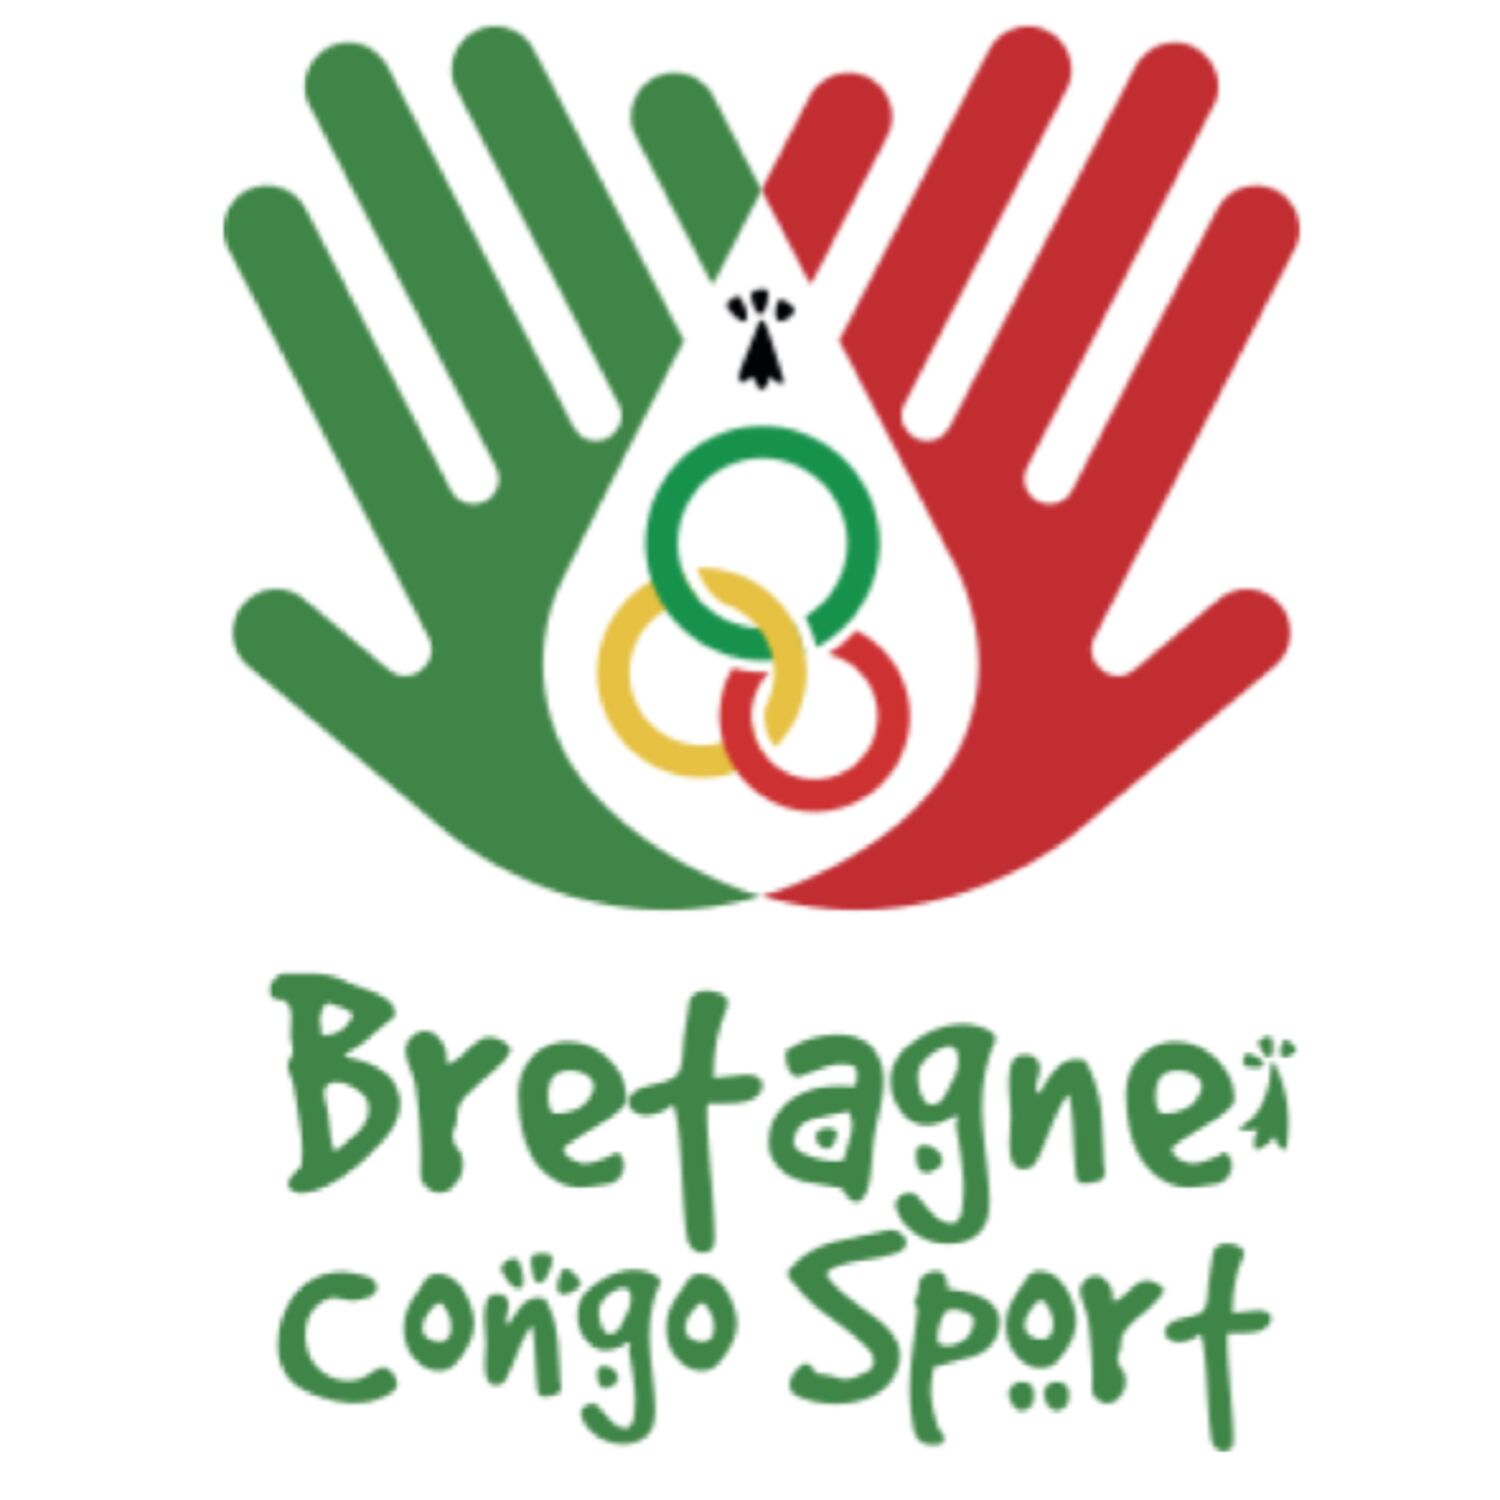 "Bretagne Congo Sport" récolte des fonds pour favoriser la pratique du sport au Congo Brazzaville